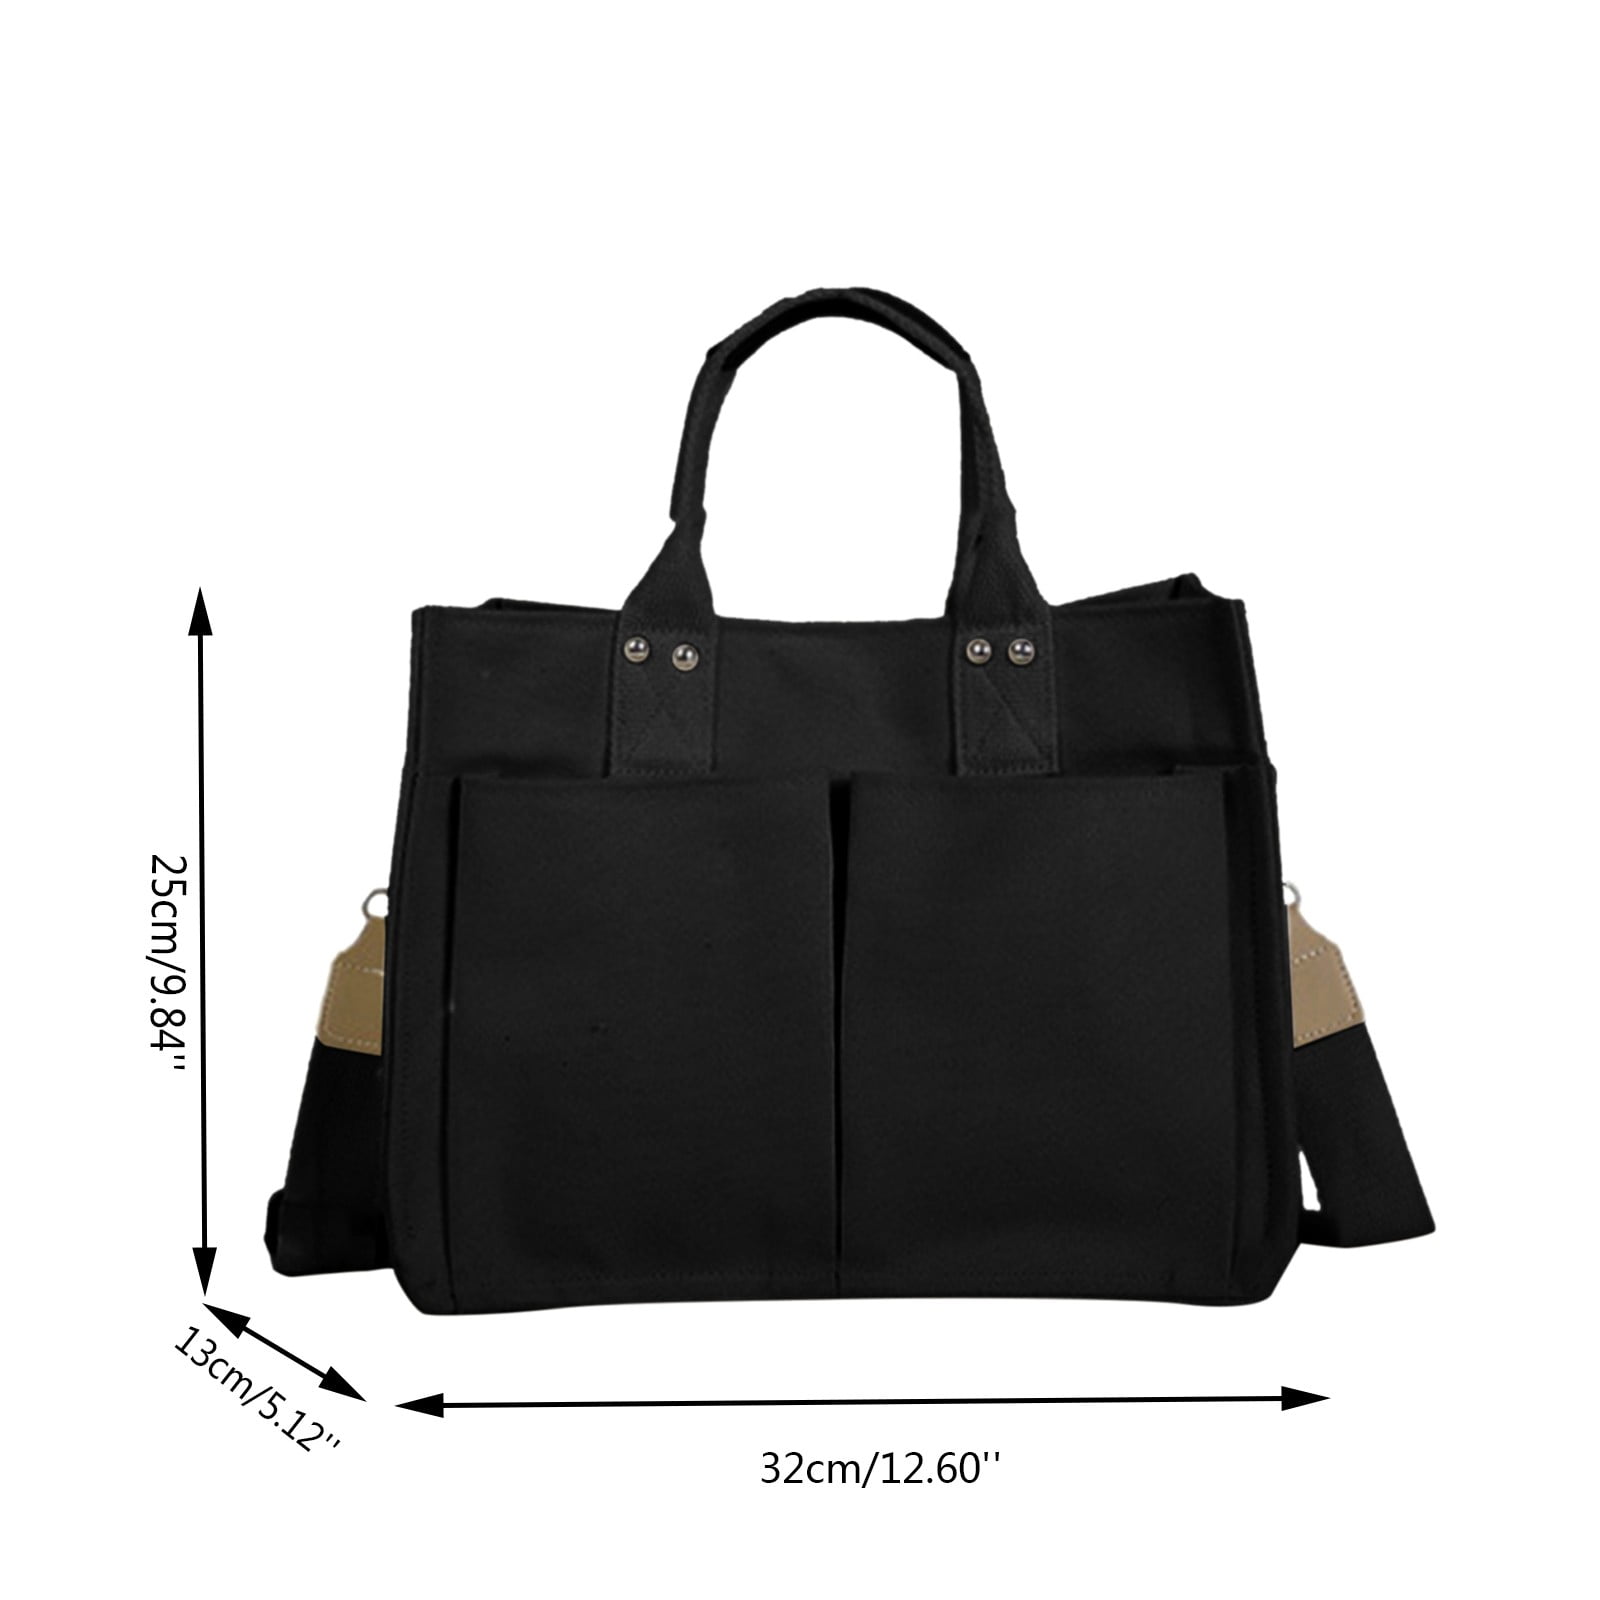 Custom Adjustable Tote Bag